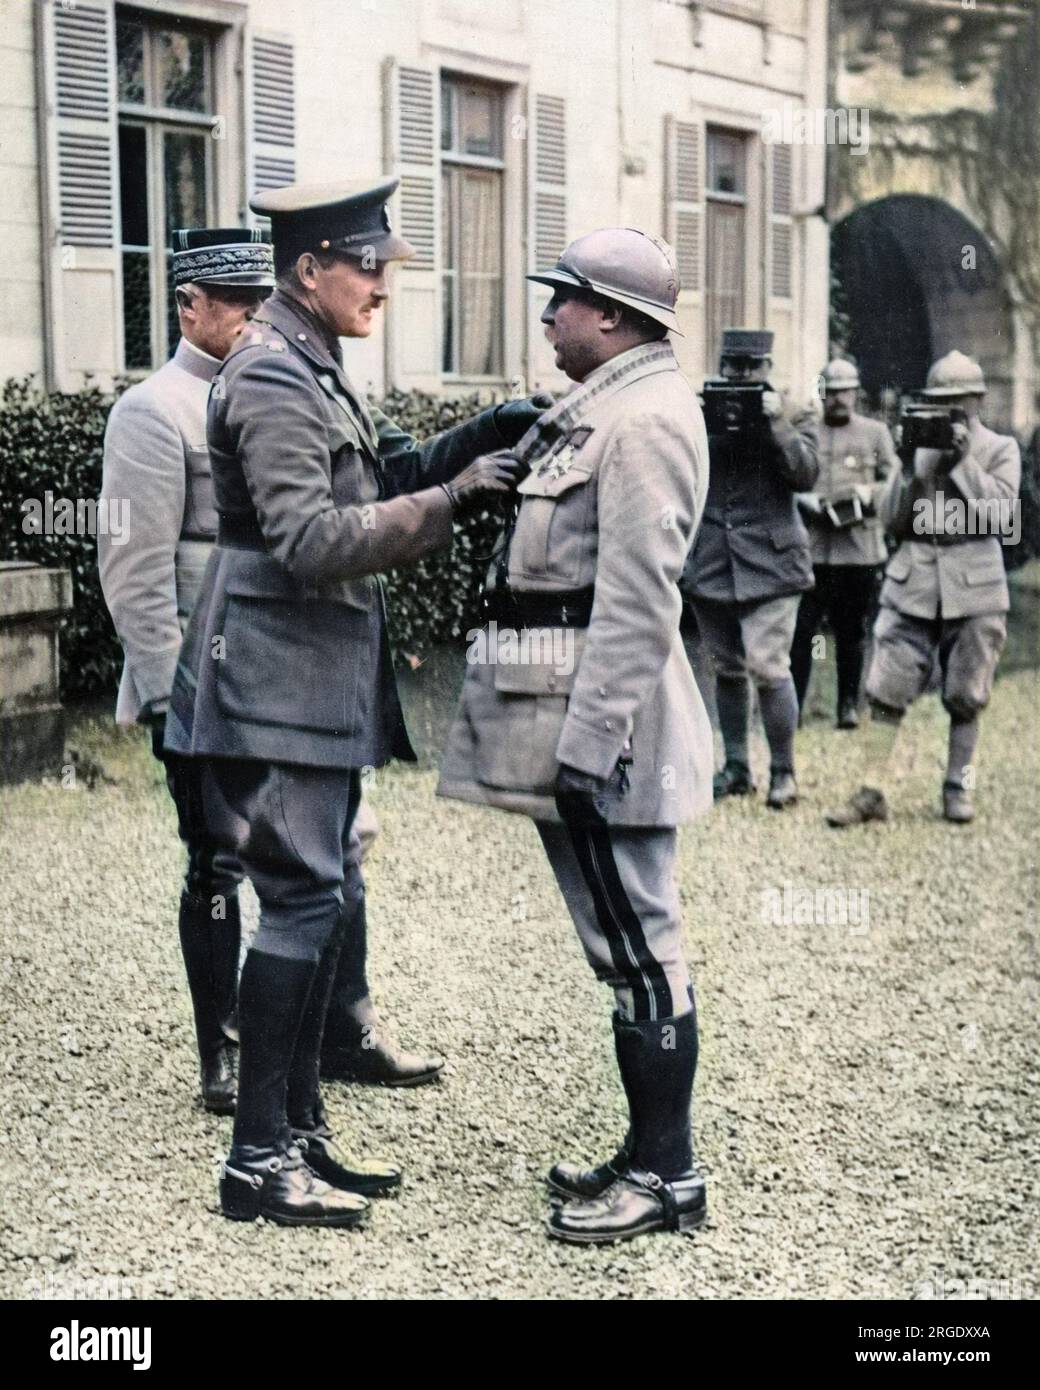 Arthur, principe di Connaught, presenta una decorazione militare a un generale francese sul fronte occidentale durante la prima guerra mondiale. Due uomini sullo sfondo stanno con le telecamere pronte. Foto Stock